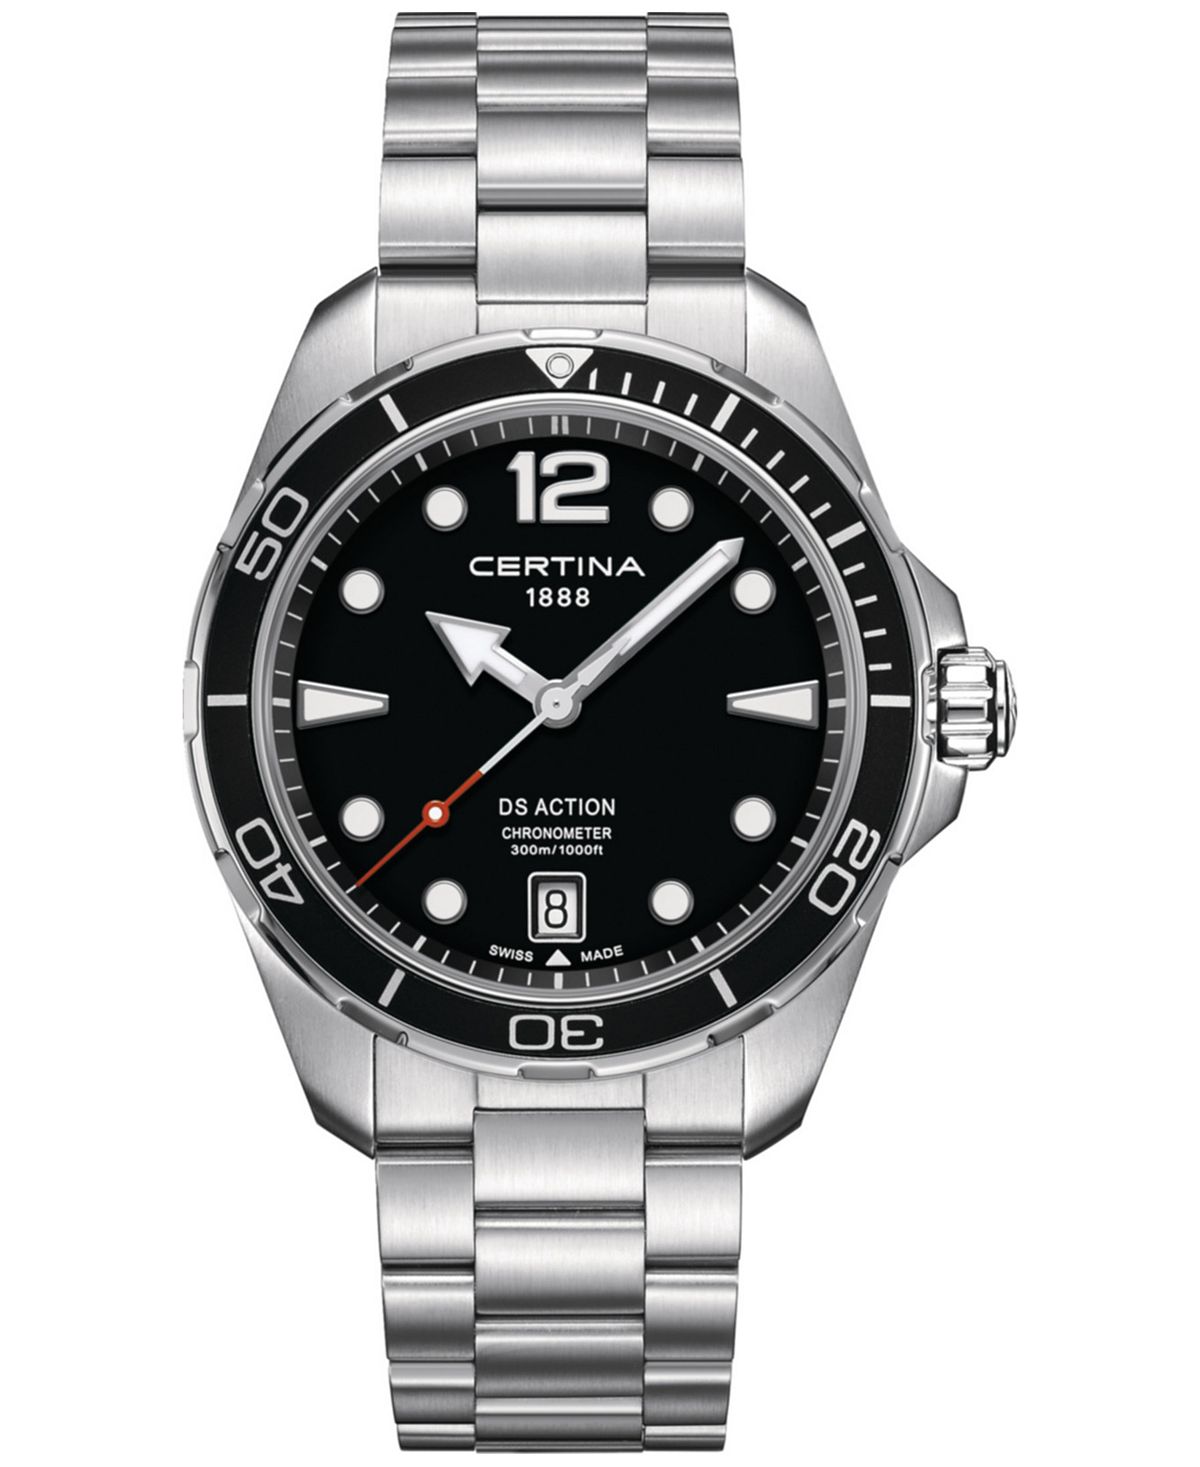 Мужские швейцарские часы DS Action с браслетом из нержавеющей стали, 43 мм Certina женские швейцарские часы ds action diamond accent из нержавеющей стали с браслетом 34 мм certina белый